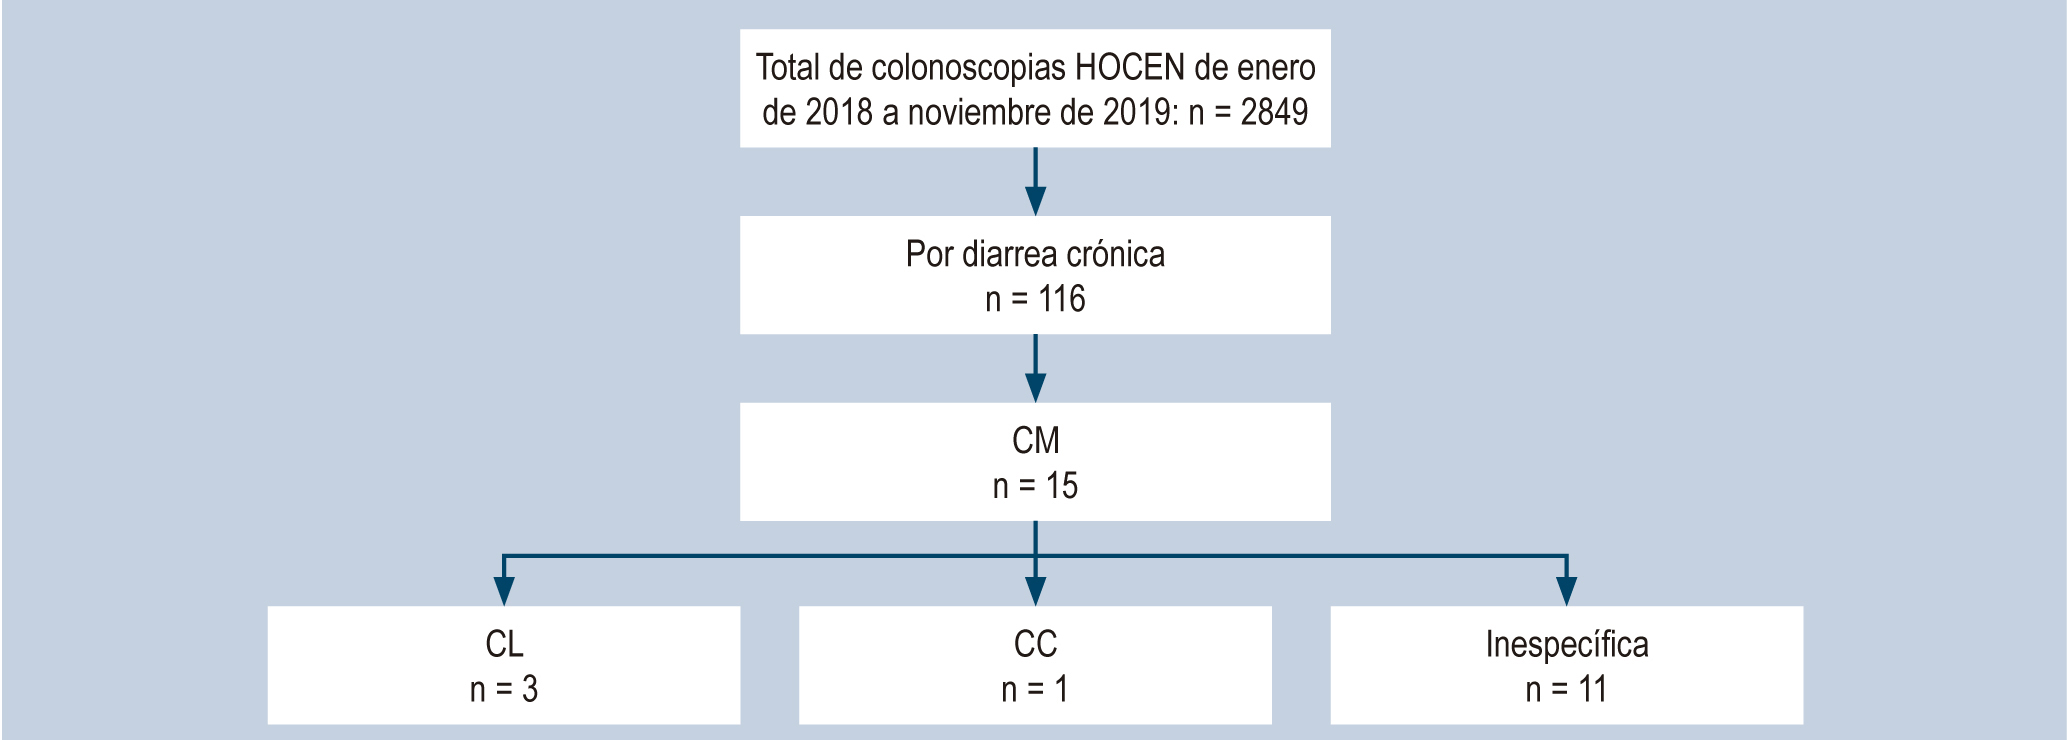 Figura 1. Hallazgos histológicos de colitis microscópica en pacientes llevados a colonoscopia por diarrea crónica.